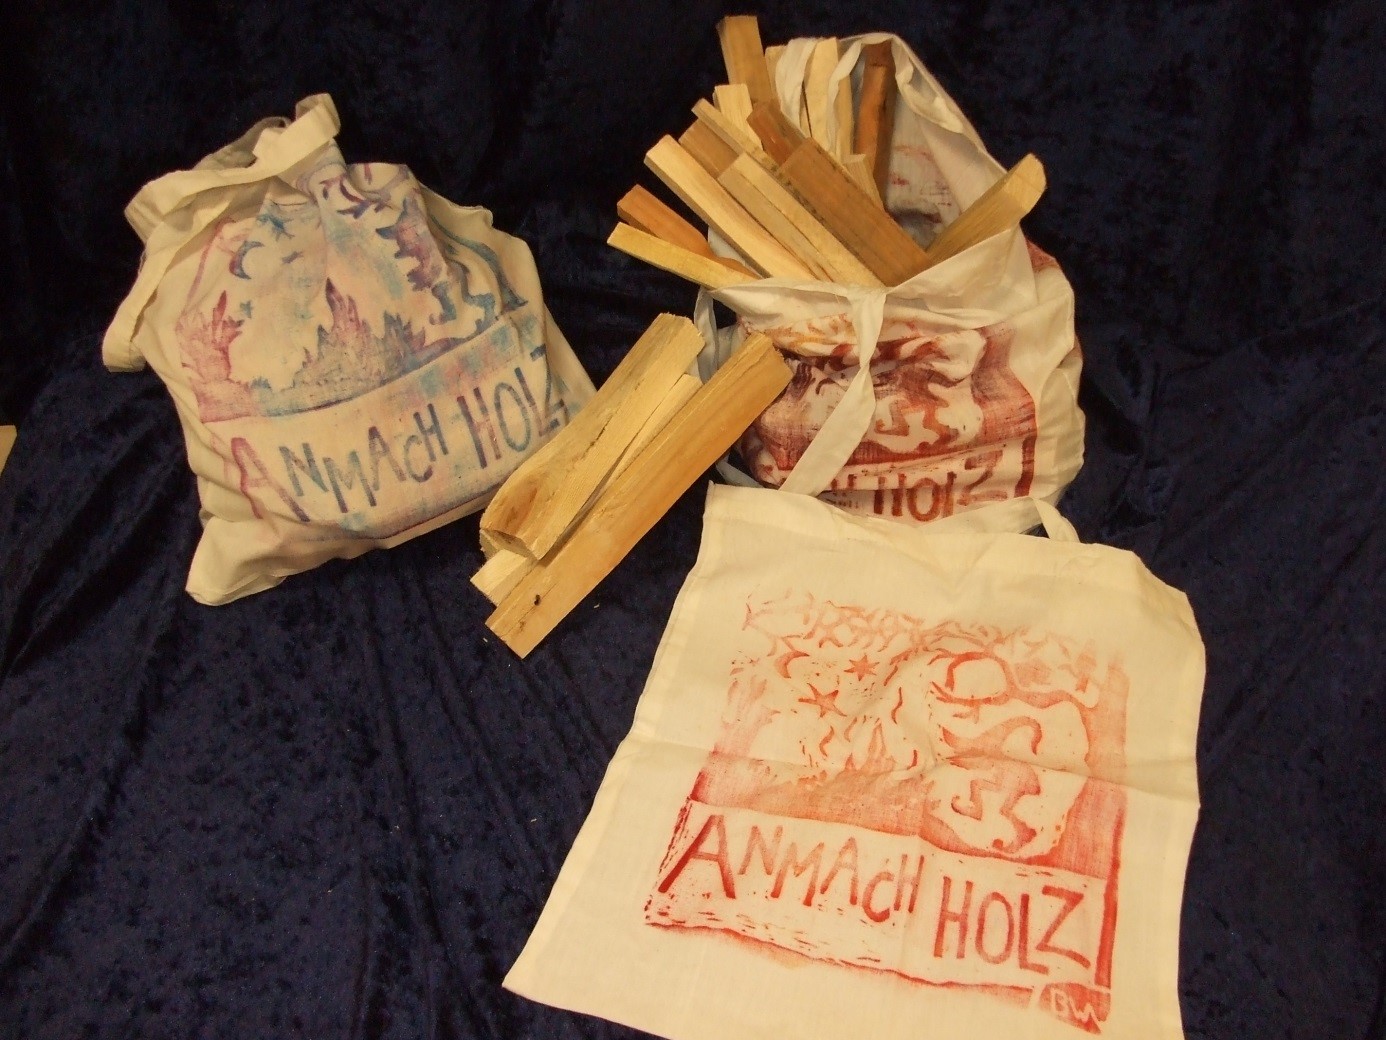 Das Foto zeigt Stofftaschen mit Anmachholz